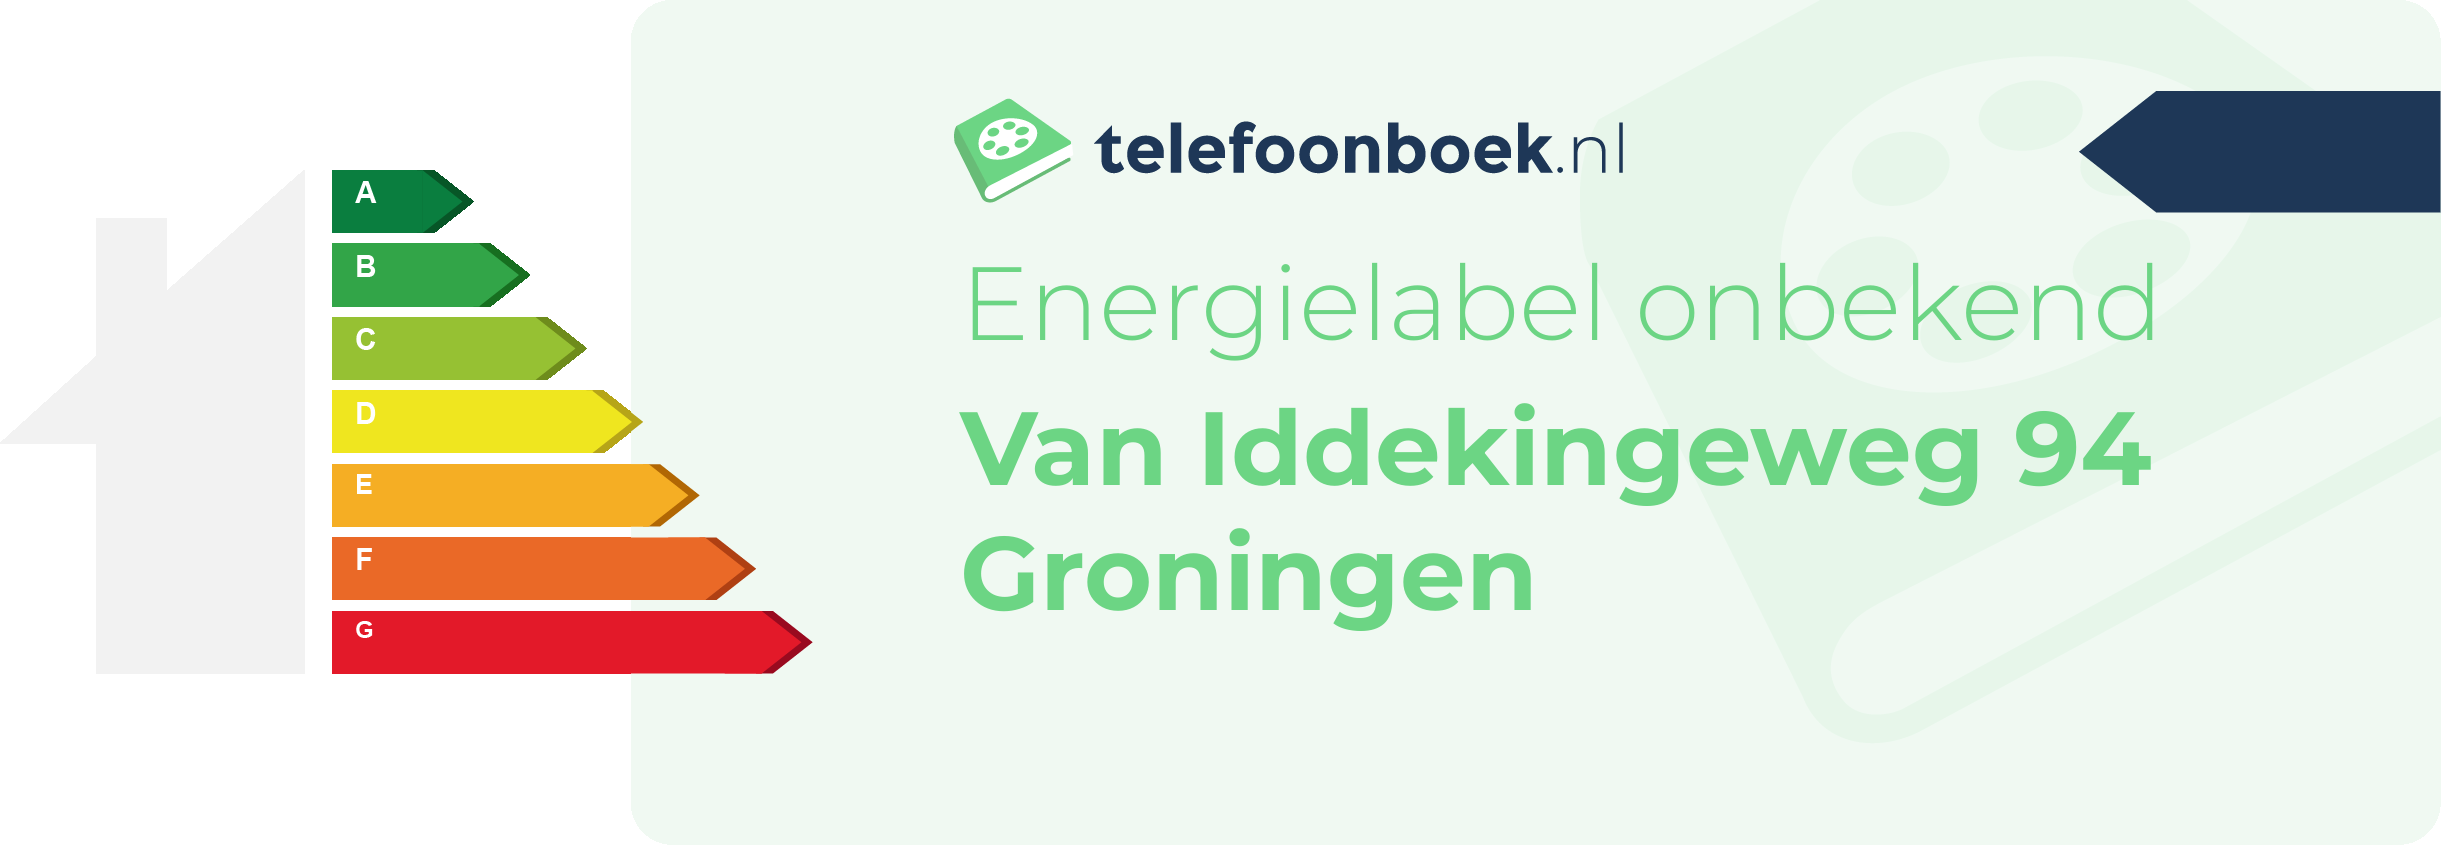 Energielabel Van Iddekingeweg 94 Groningen